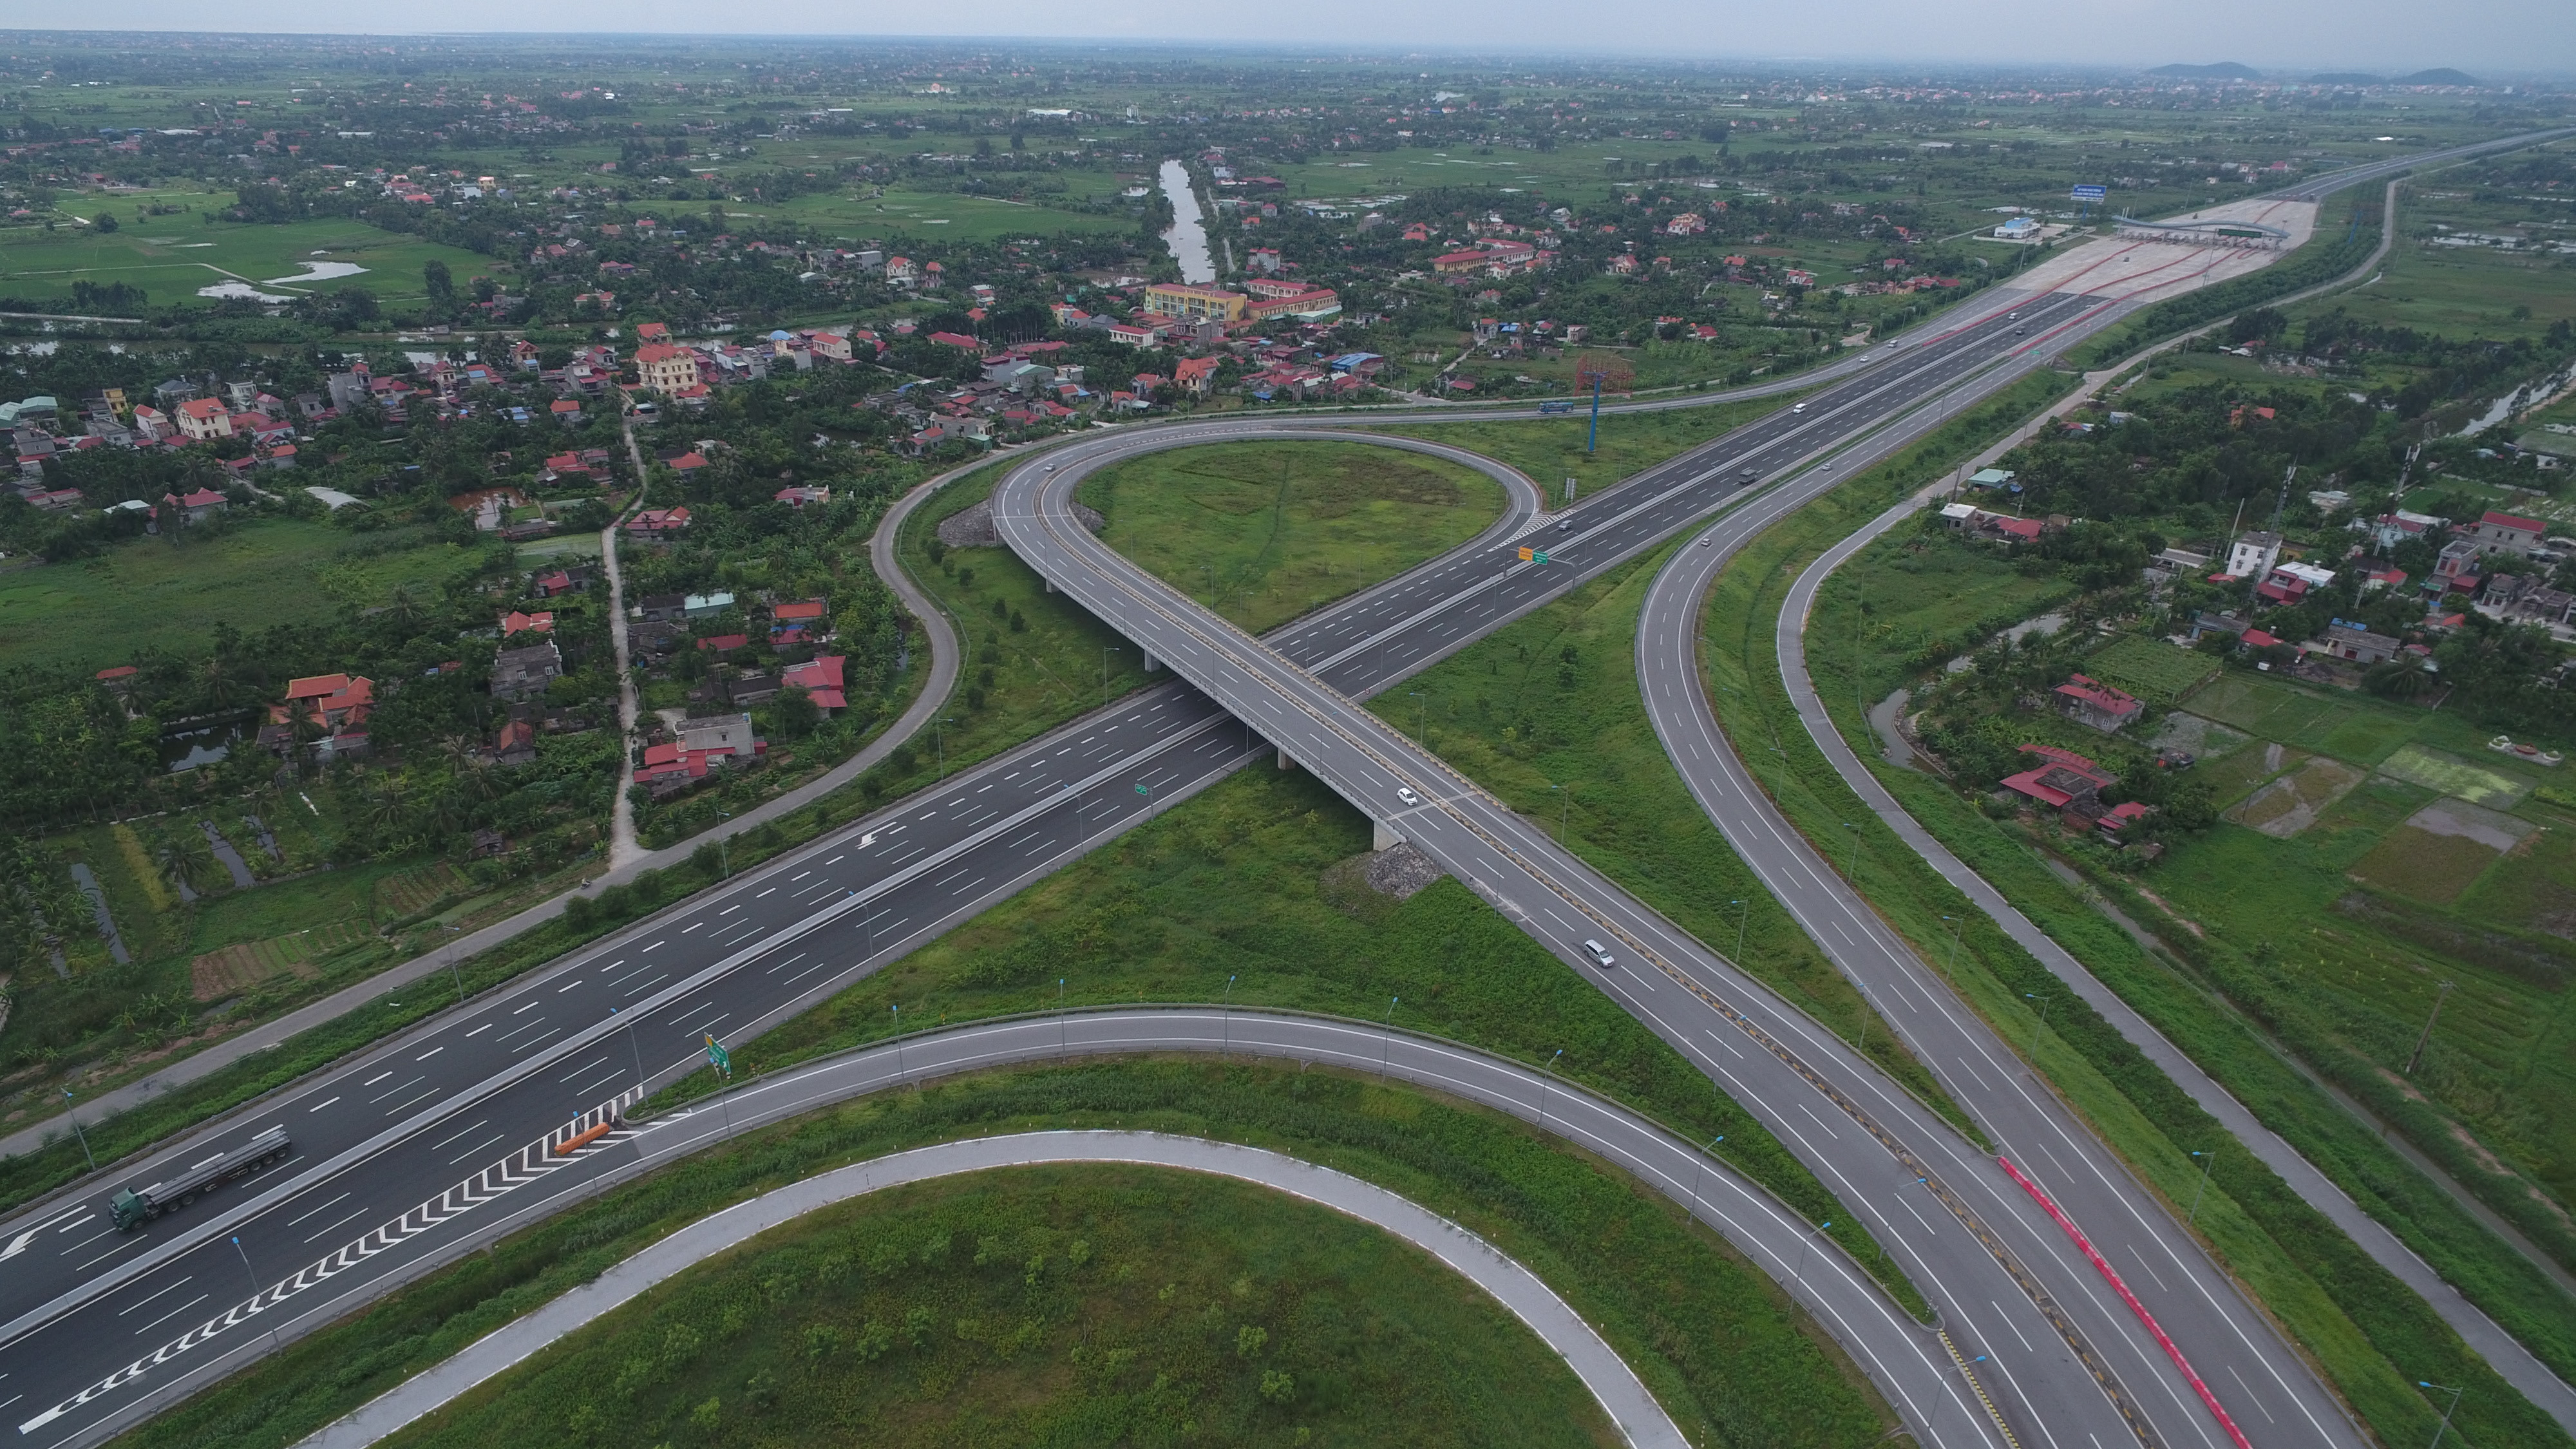 Cao tốc Hà Nội – Hải Phòng dự án trọng điểm tạo sức hút cho khu vực kinh tế trọng điểm Bắc Bộ